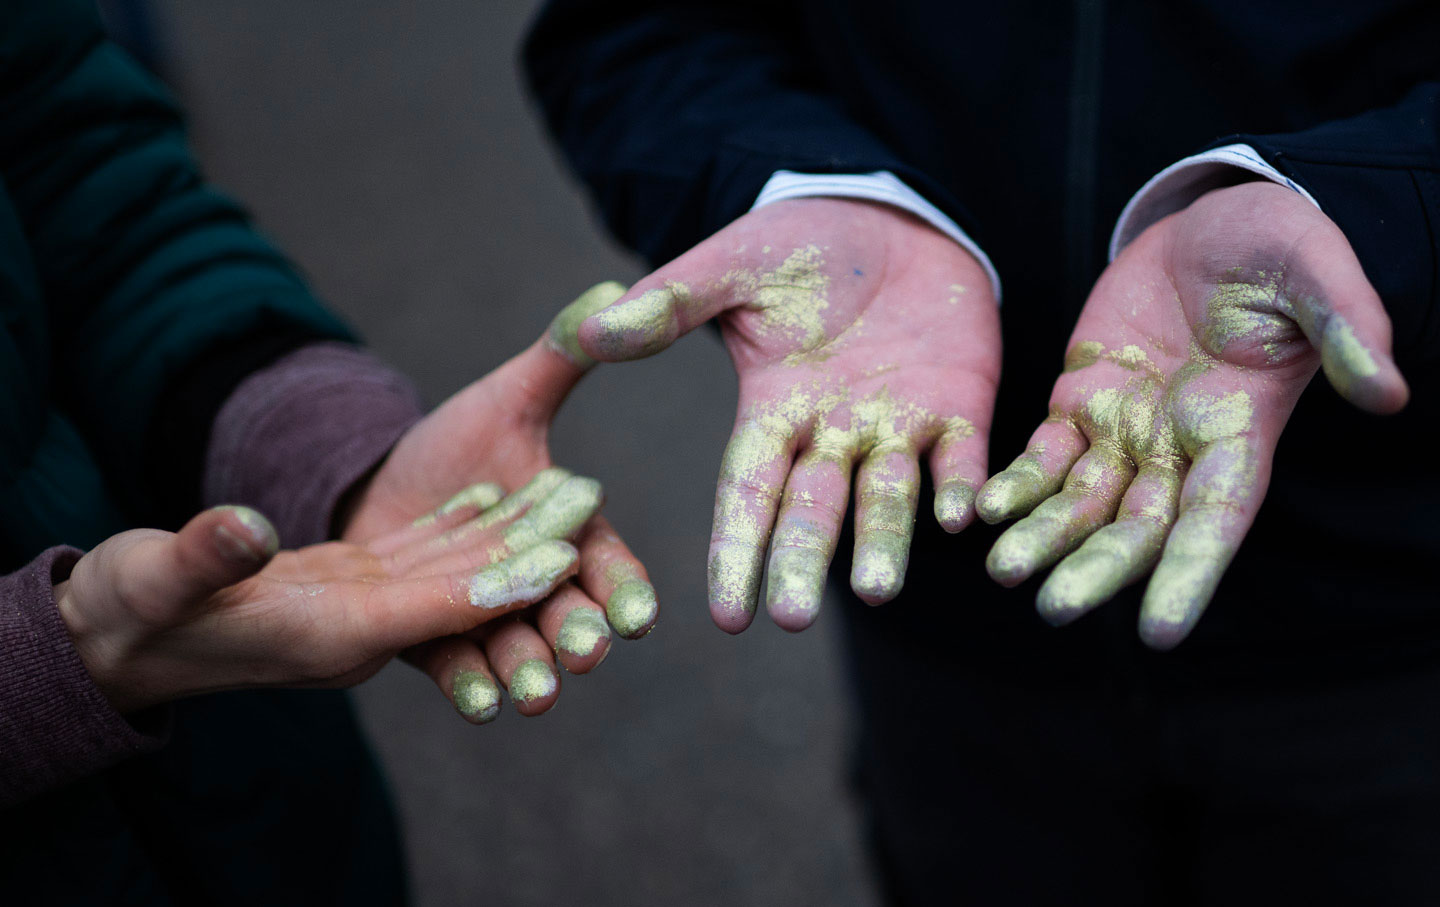 Ali und Brockolie, zwei Aktivisten der Extinction Rebellion Anfang 20, bedeckten ihre Hände mit Glitzer, um ihre Fingerabdrücke zu verdecken.